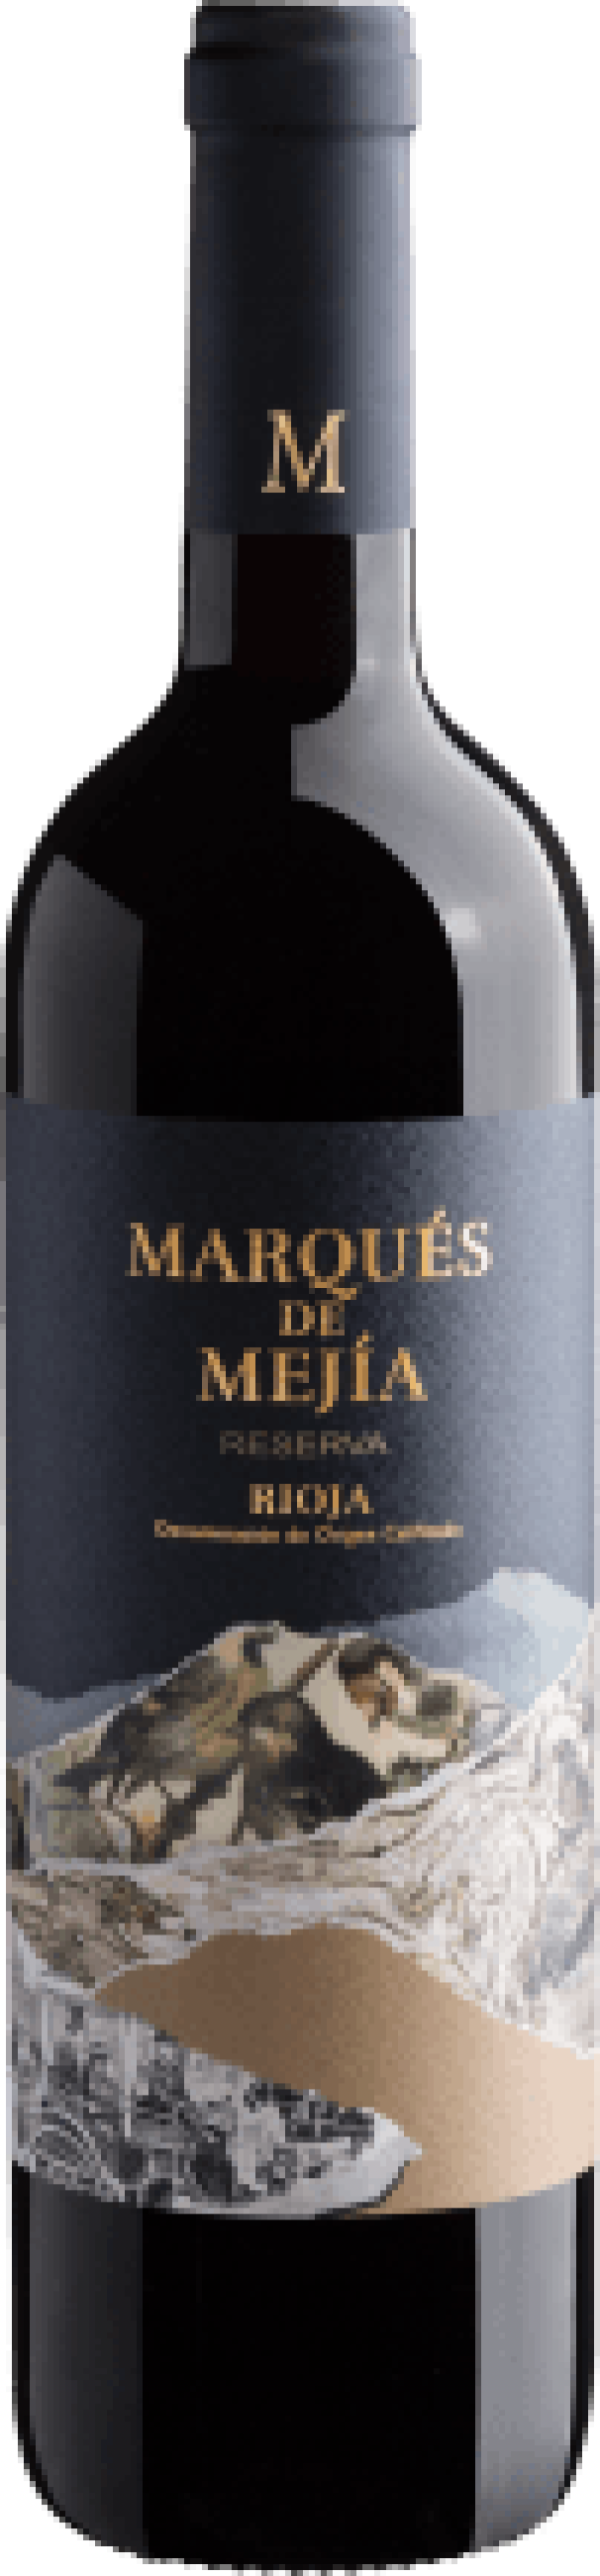 Marqués de Mejía Reserva Rioja DOC 2017